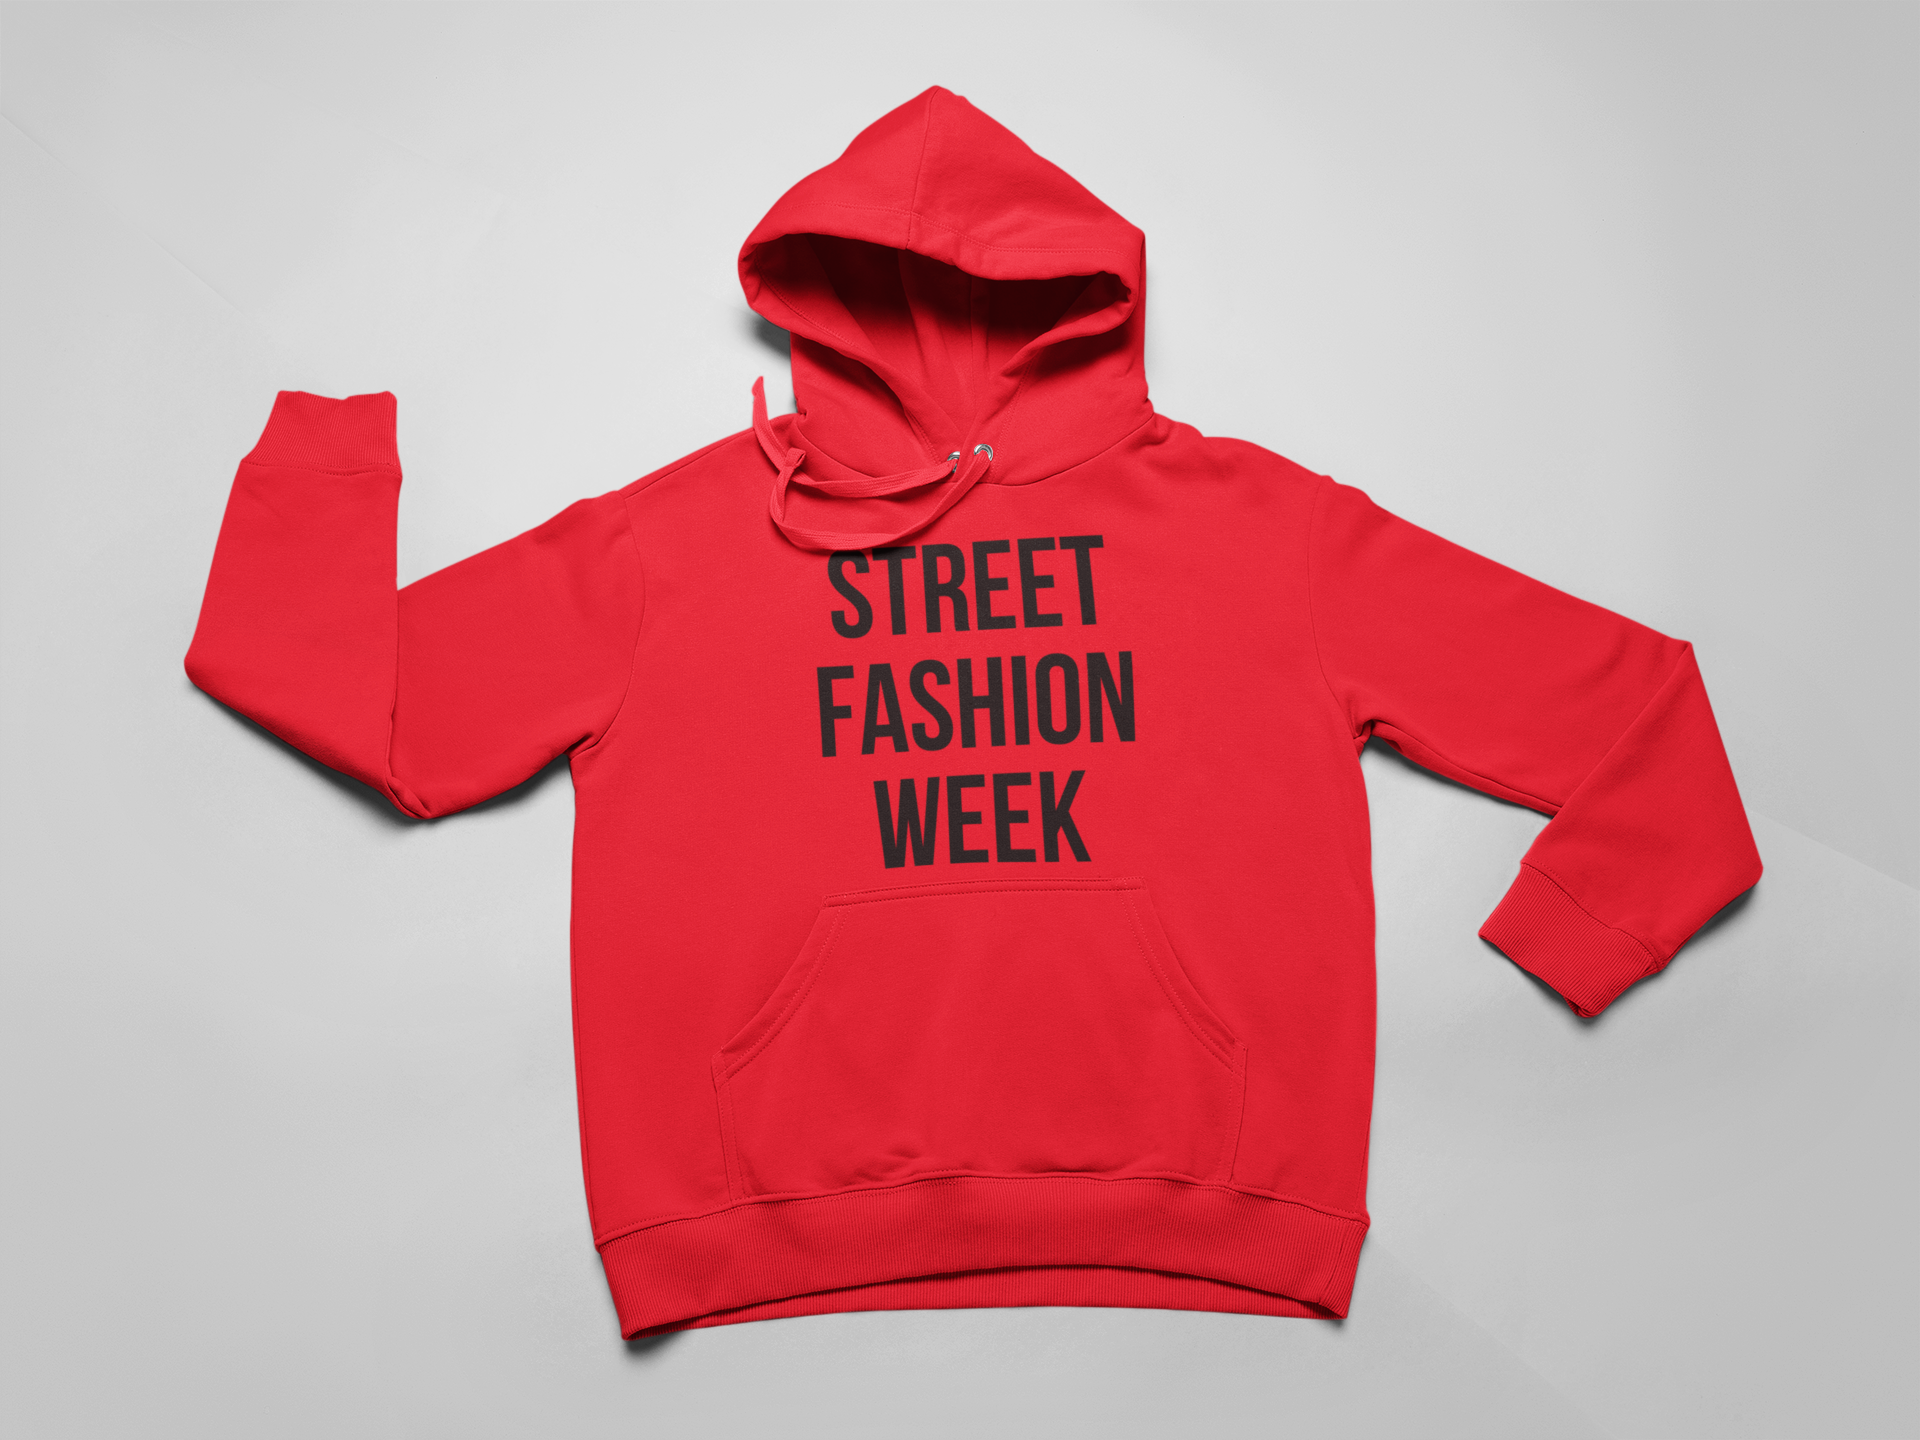 Street Fashion Week Hoodie